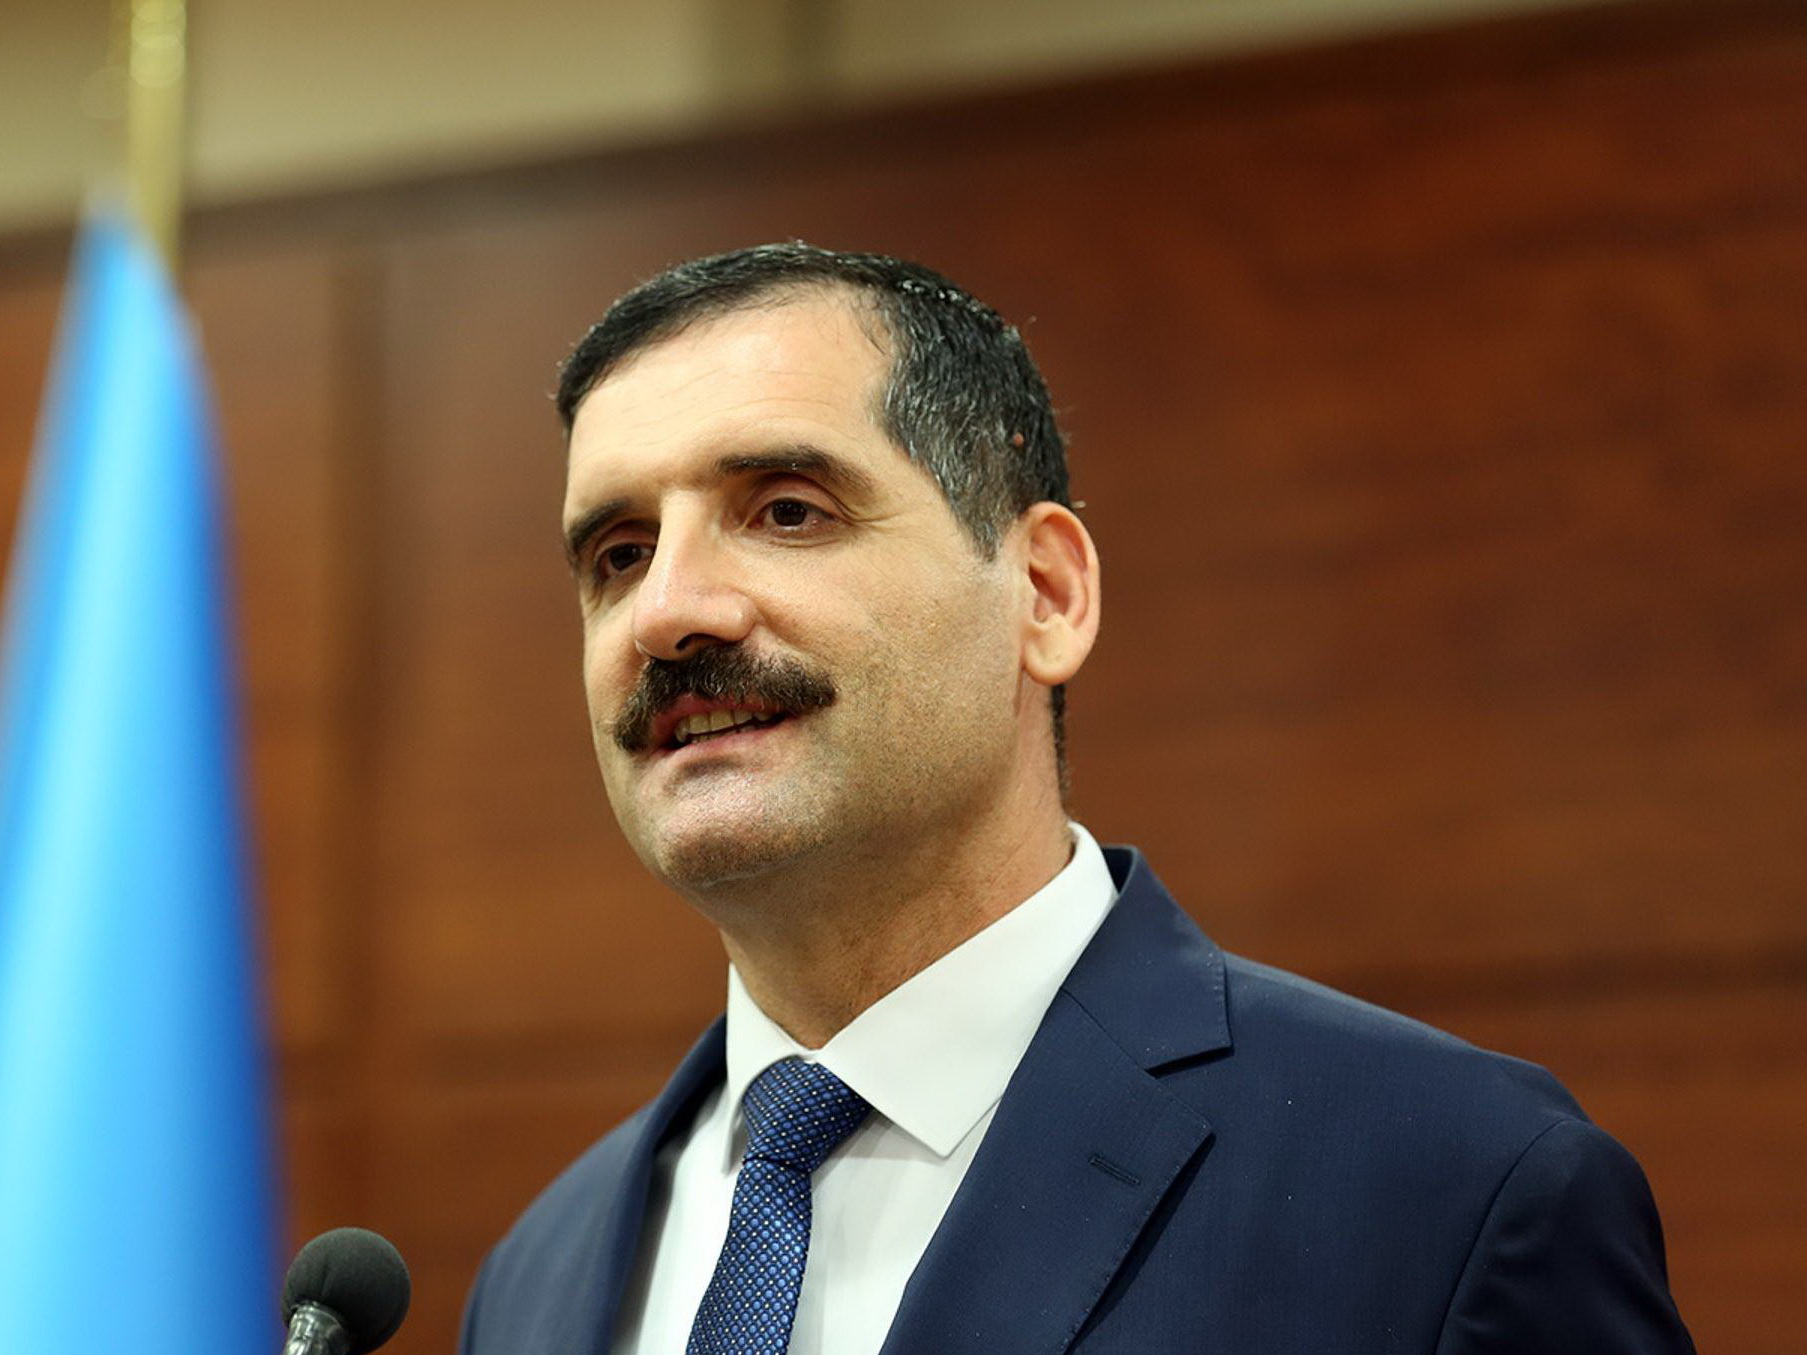 Посол Турции: Желаю, чтобы Карабах в ближайшее время был освобожден от оккупации